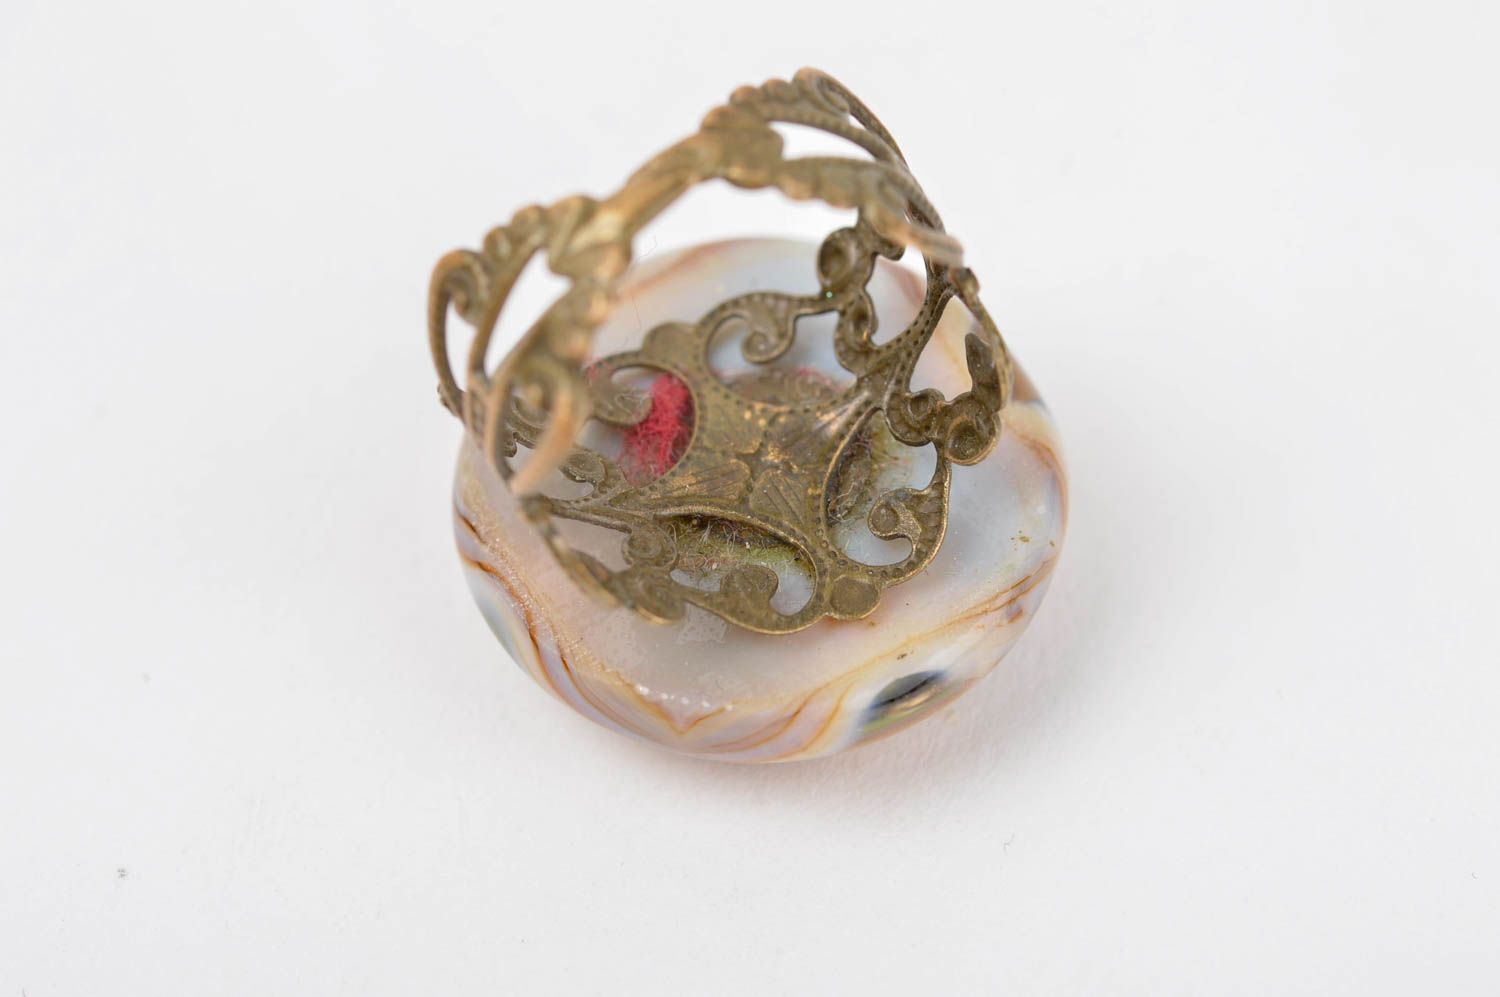 Unusual handmade glass ring handmade accessories for girls artisan jewelry photo 3